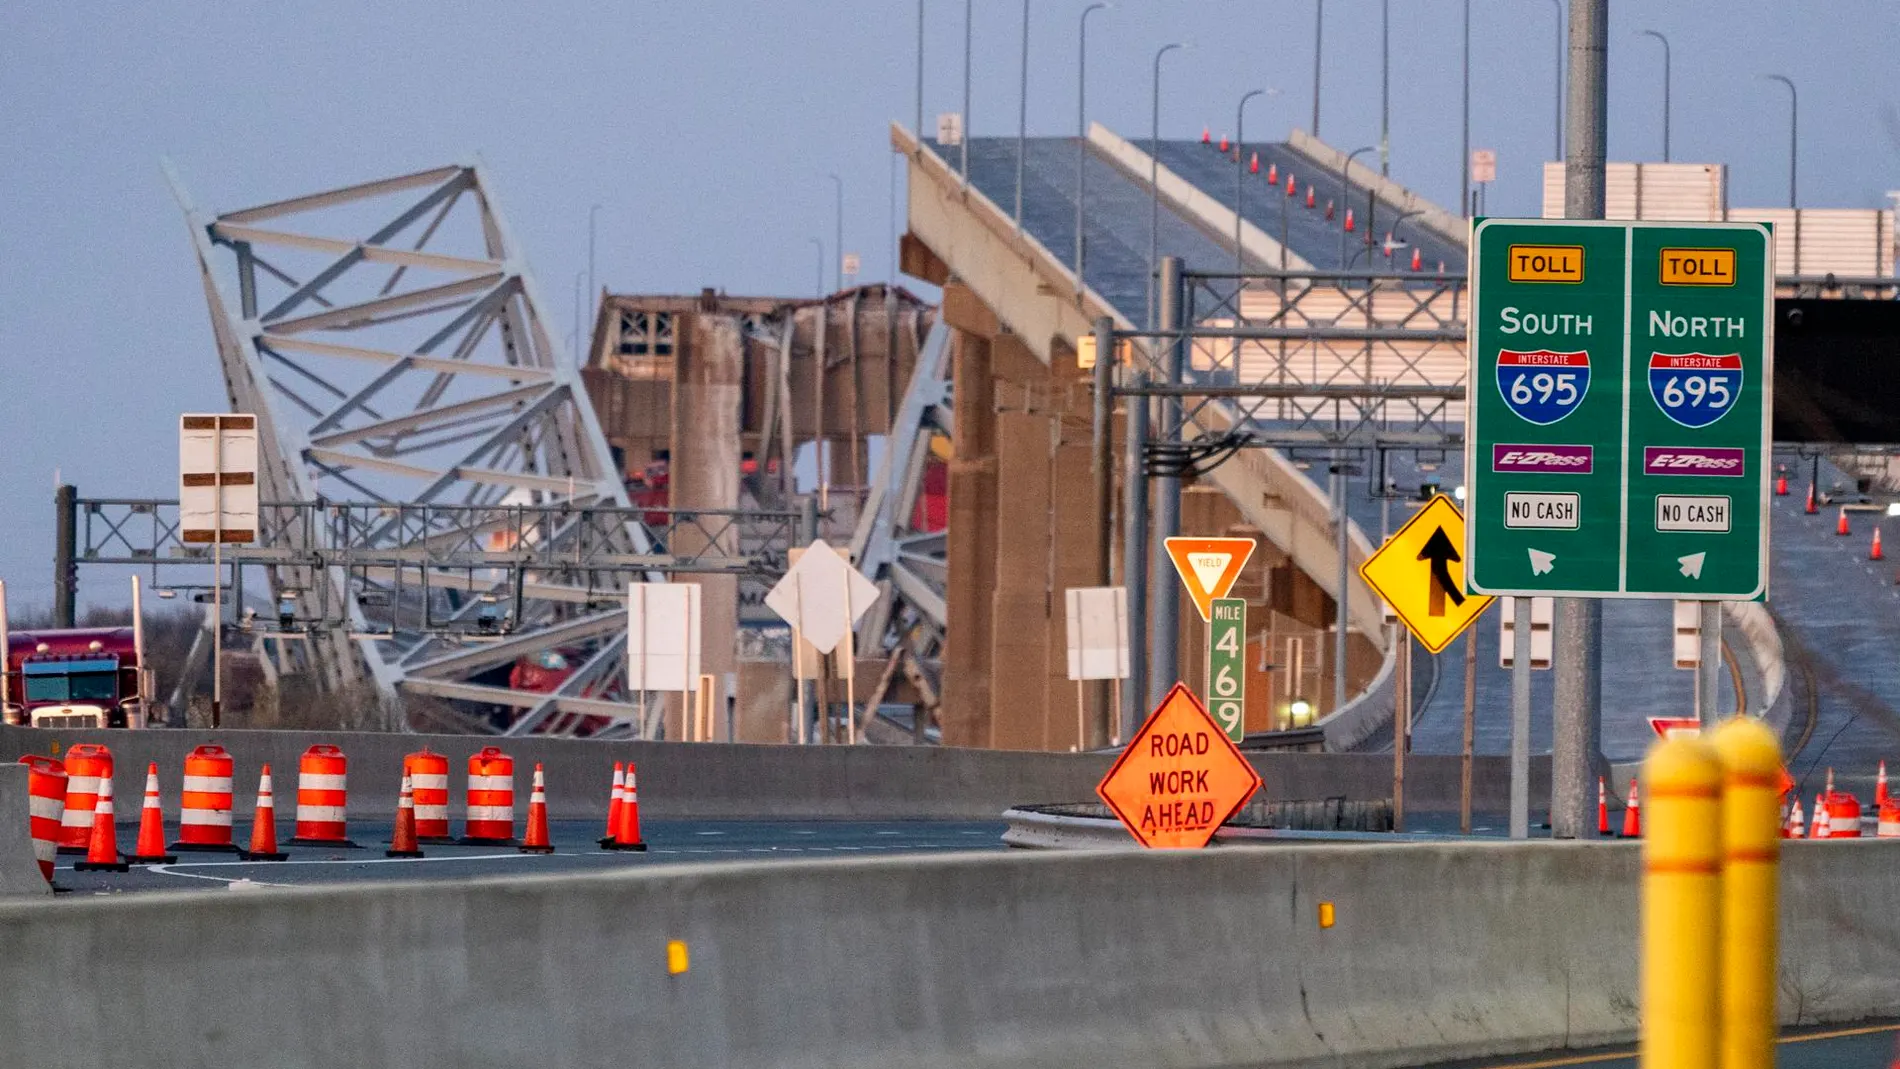 Imagen del puente de Baltimore tras la colisión de un carguero.